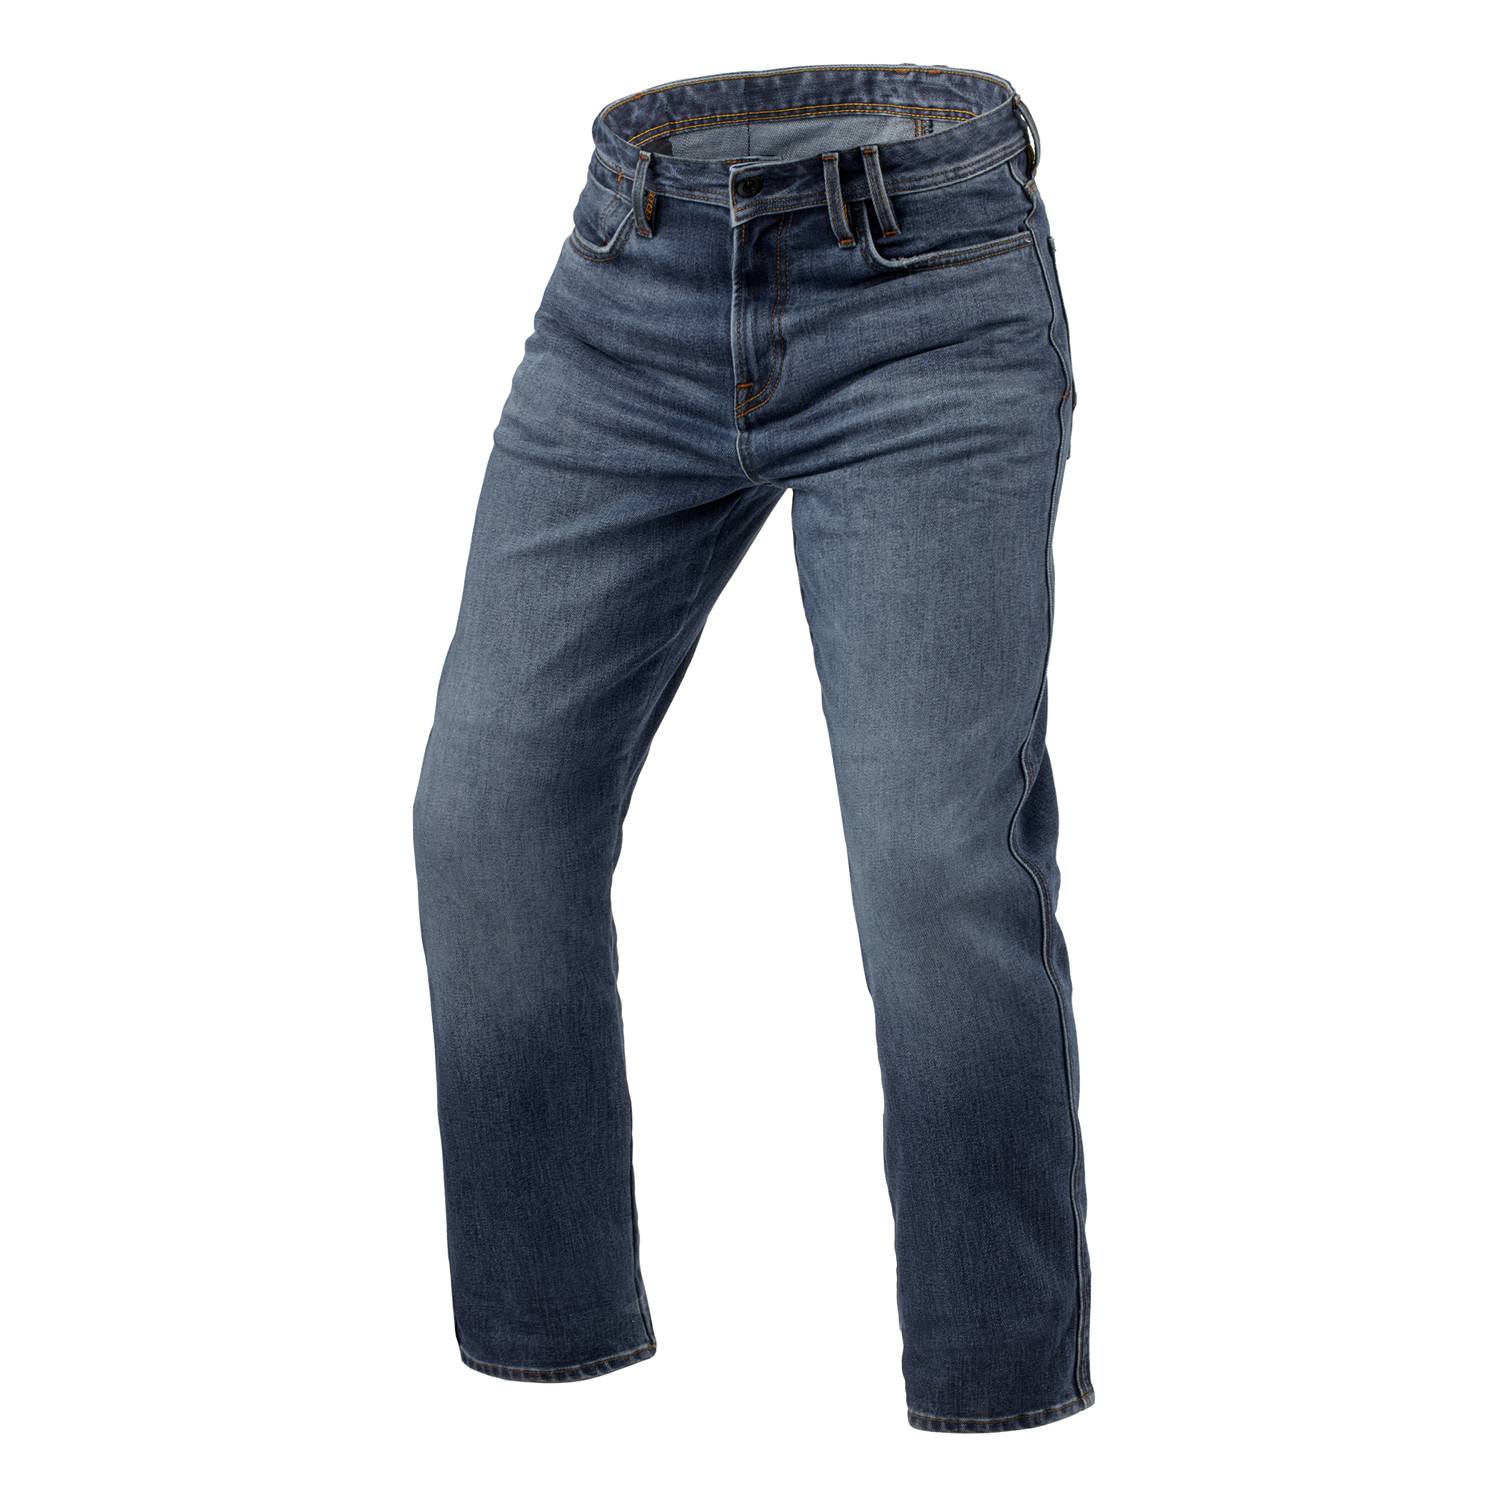 Image of REV'IT! Jeans Lombard 3 RF Medium Blue Stone L36 Motorcycle Jeans Size L36/W32 EN